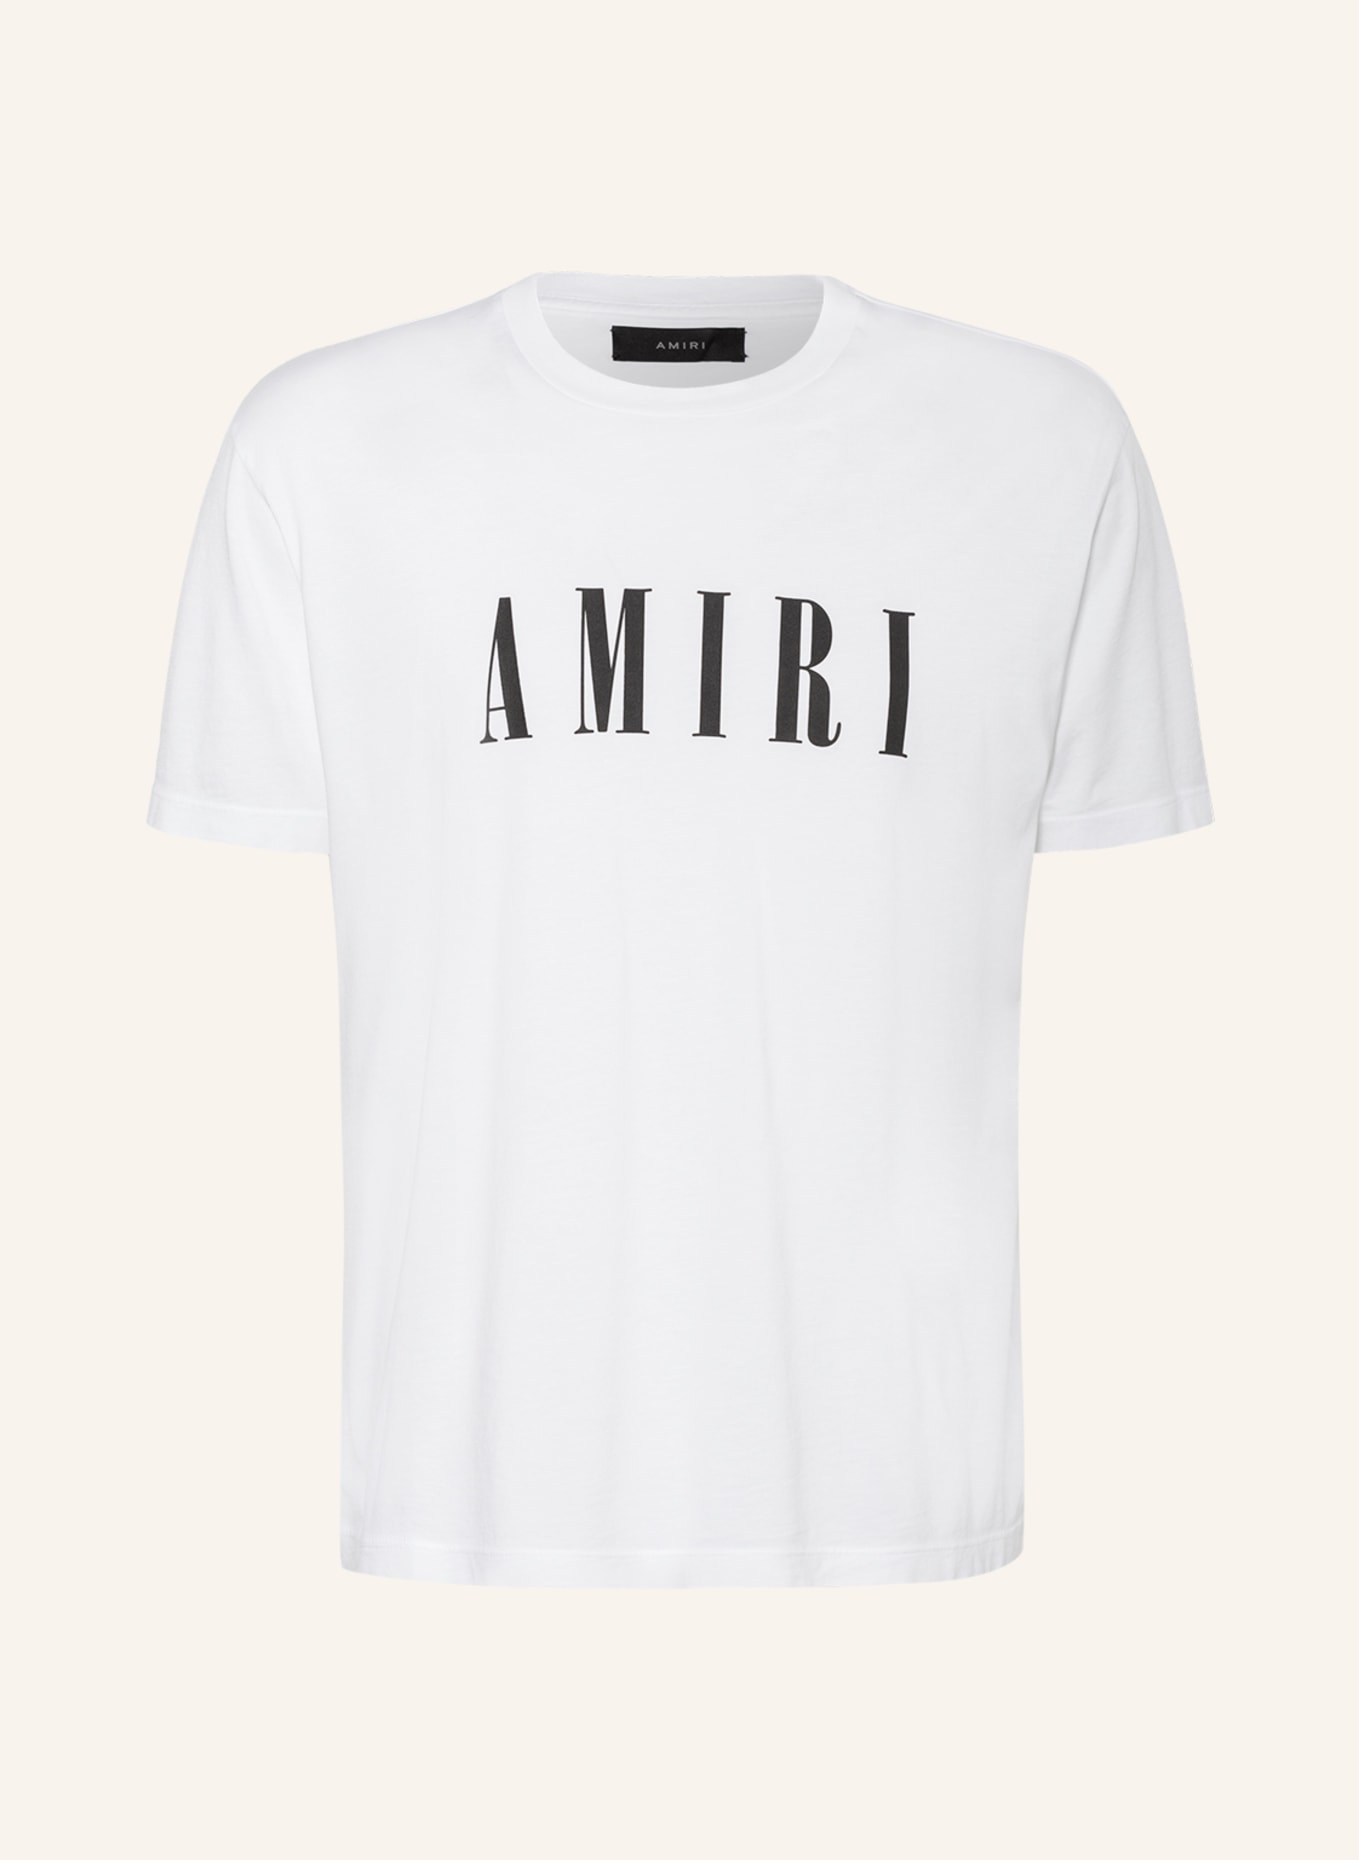 AMIRI T-Shirt, Farbe: 100 WHITE (Bild 1)